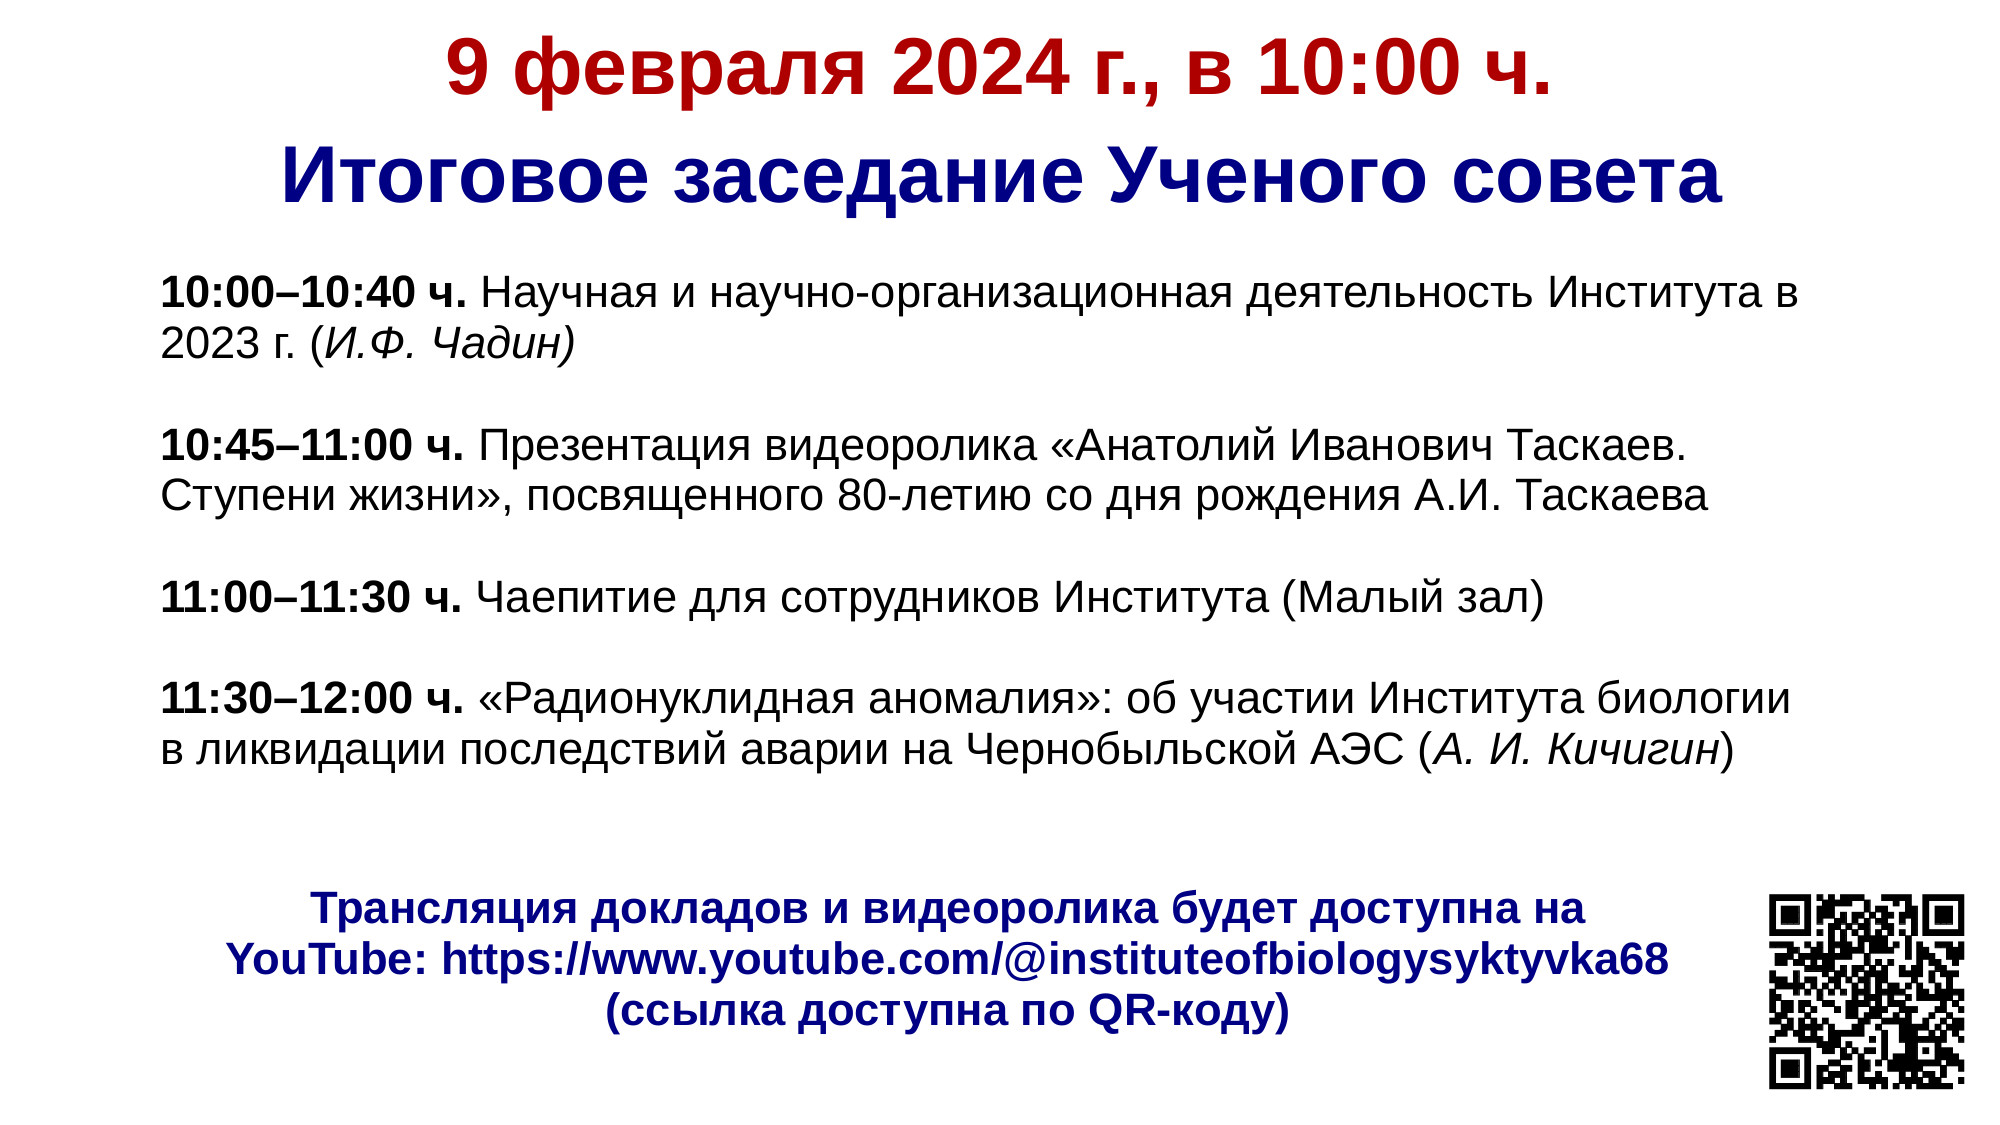 Итоговое заседание Ученого совета. 9 февраля 2024 г., в 10:00 ч.